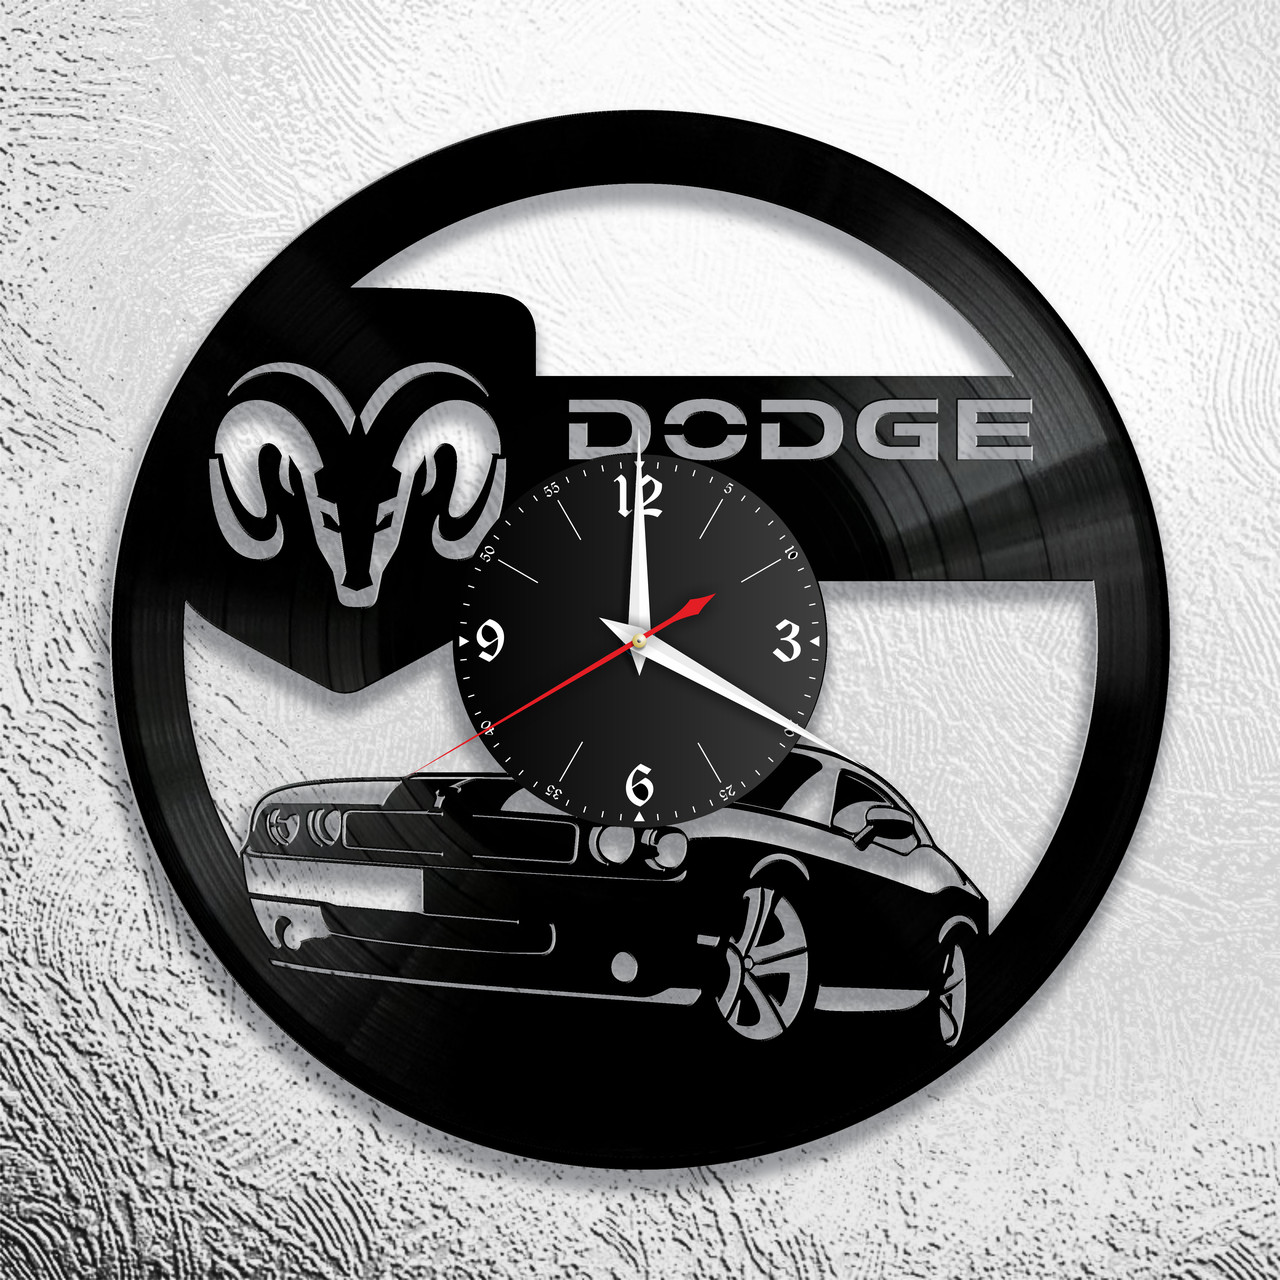 Оригинальные часы из виниловых пластинок  "Dodge" версия 1